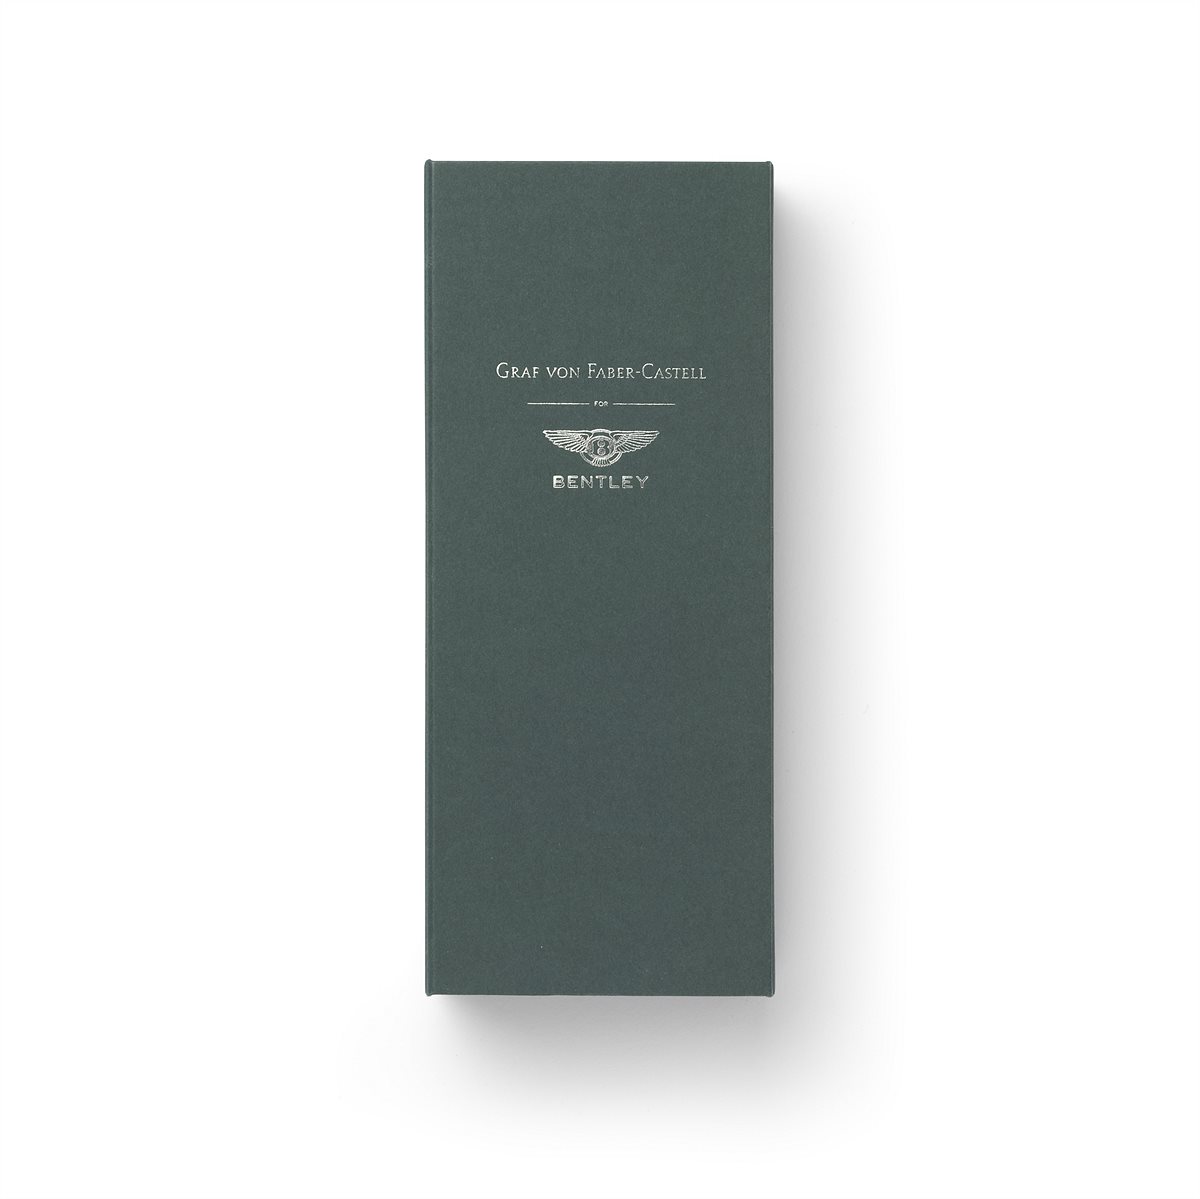 Graf von Faber-Castell for Bentley Limited Edition Barnato Geschenkbox